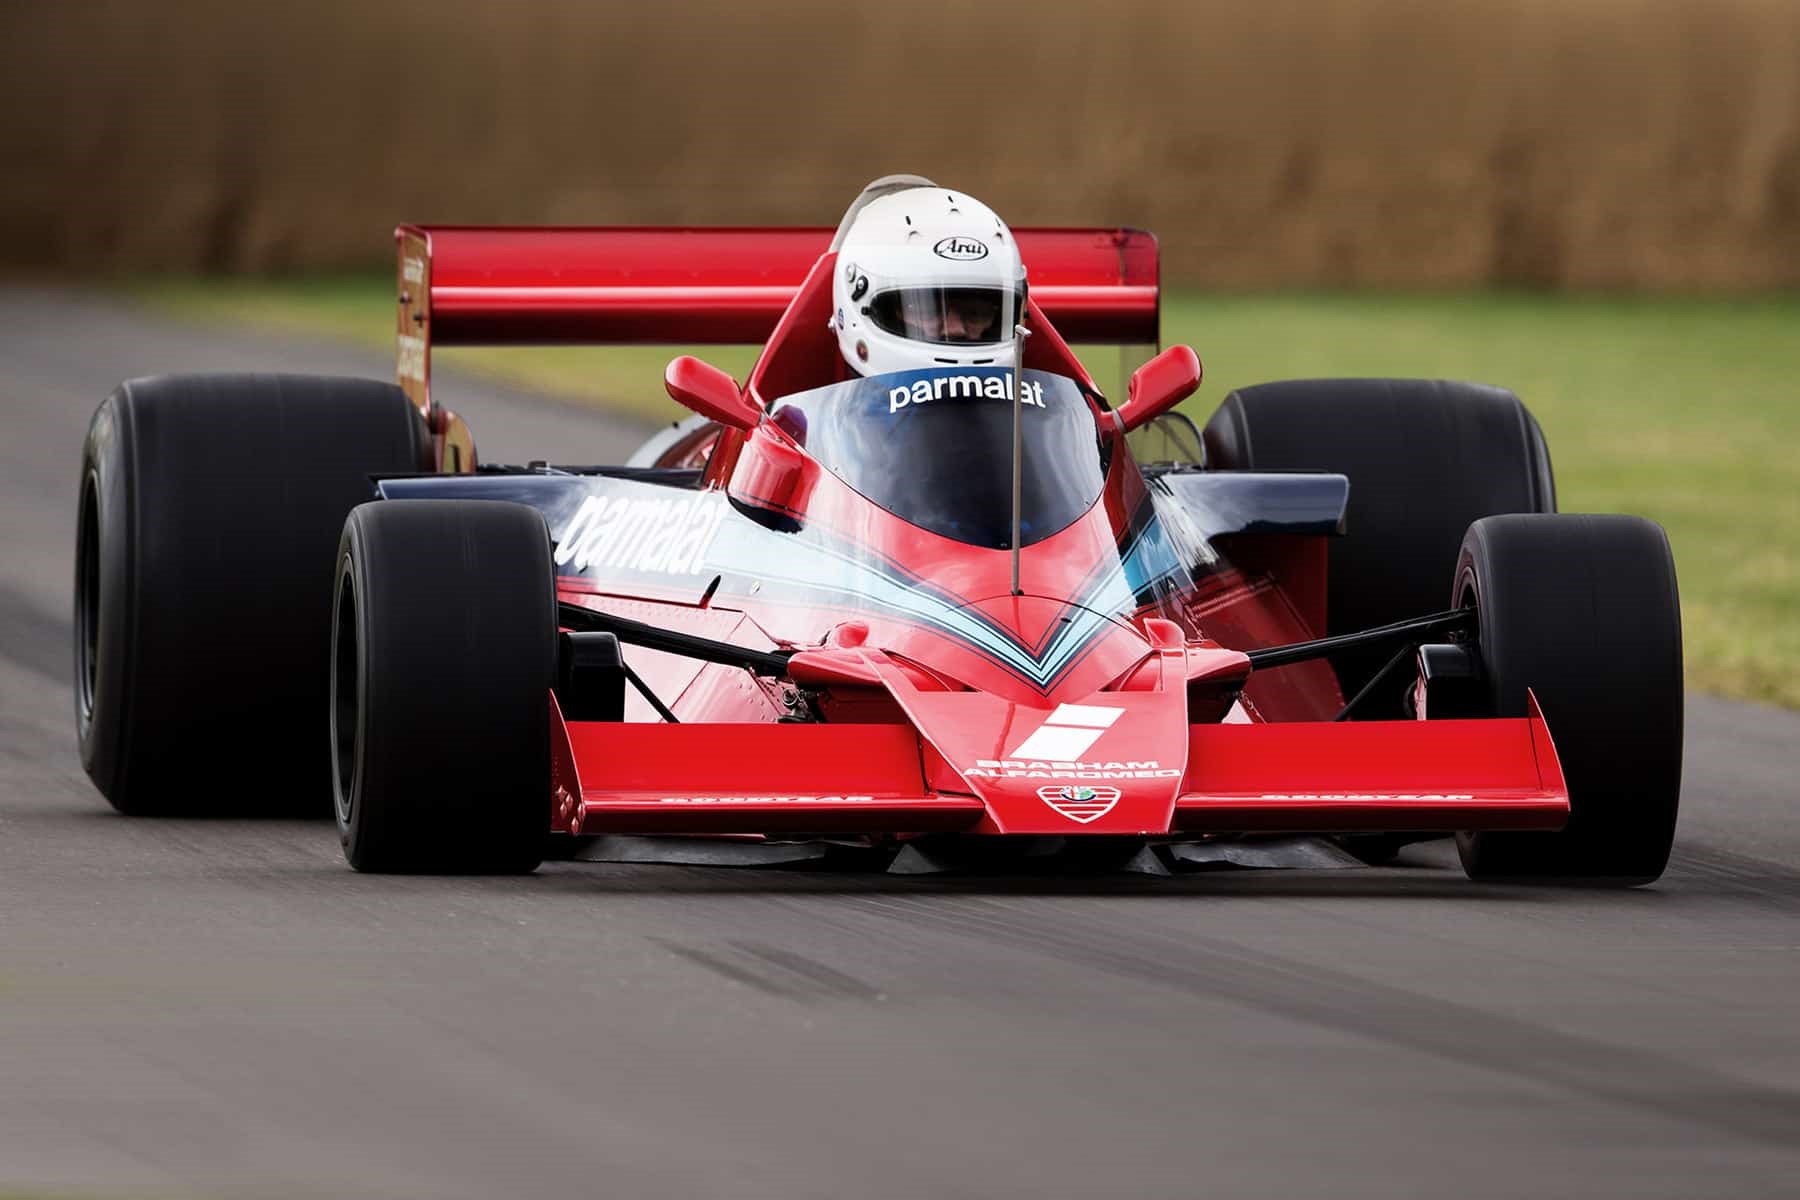 Legendary Brabham designer Gordon Murray names new hypercar after